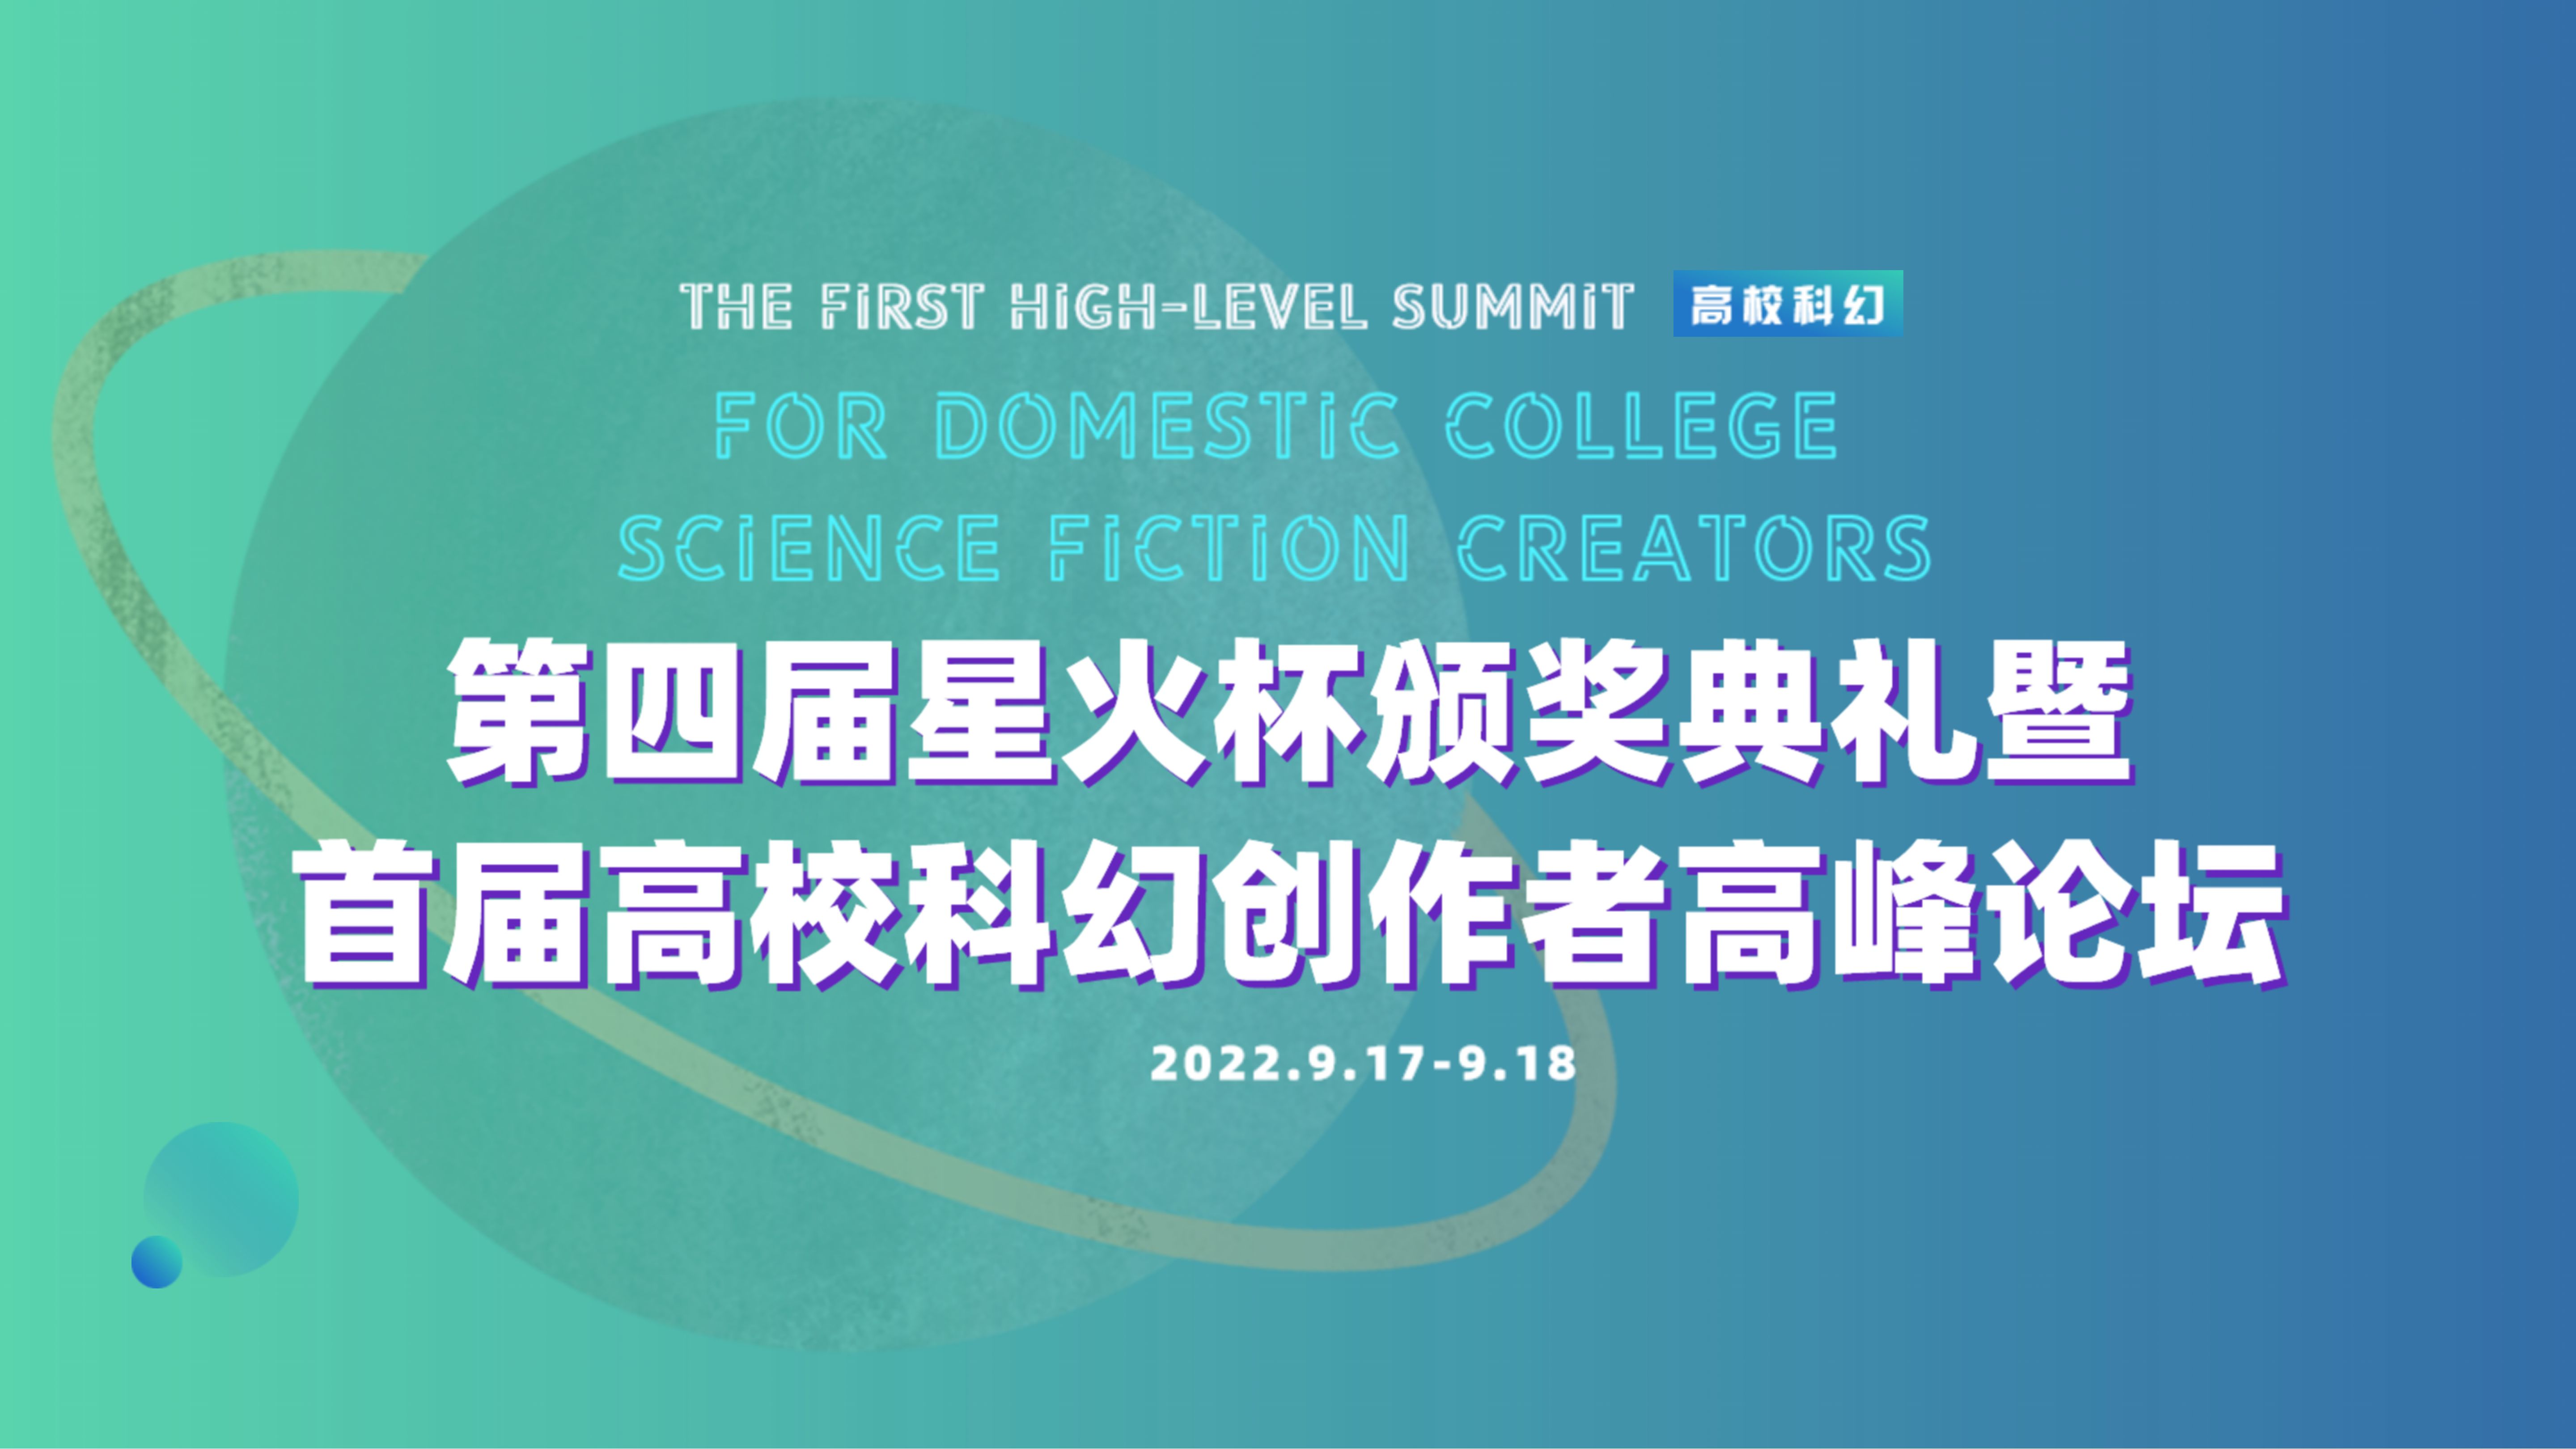 第四届星火杯颁奖典礼暨首届高校科幻创作者高峰论坛将于近期举办